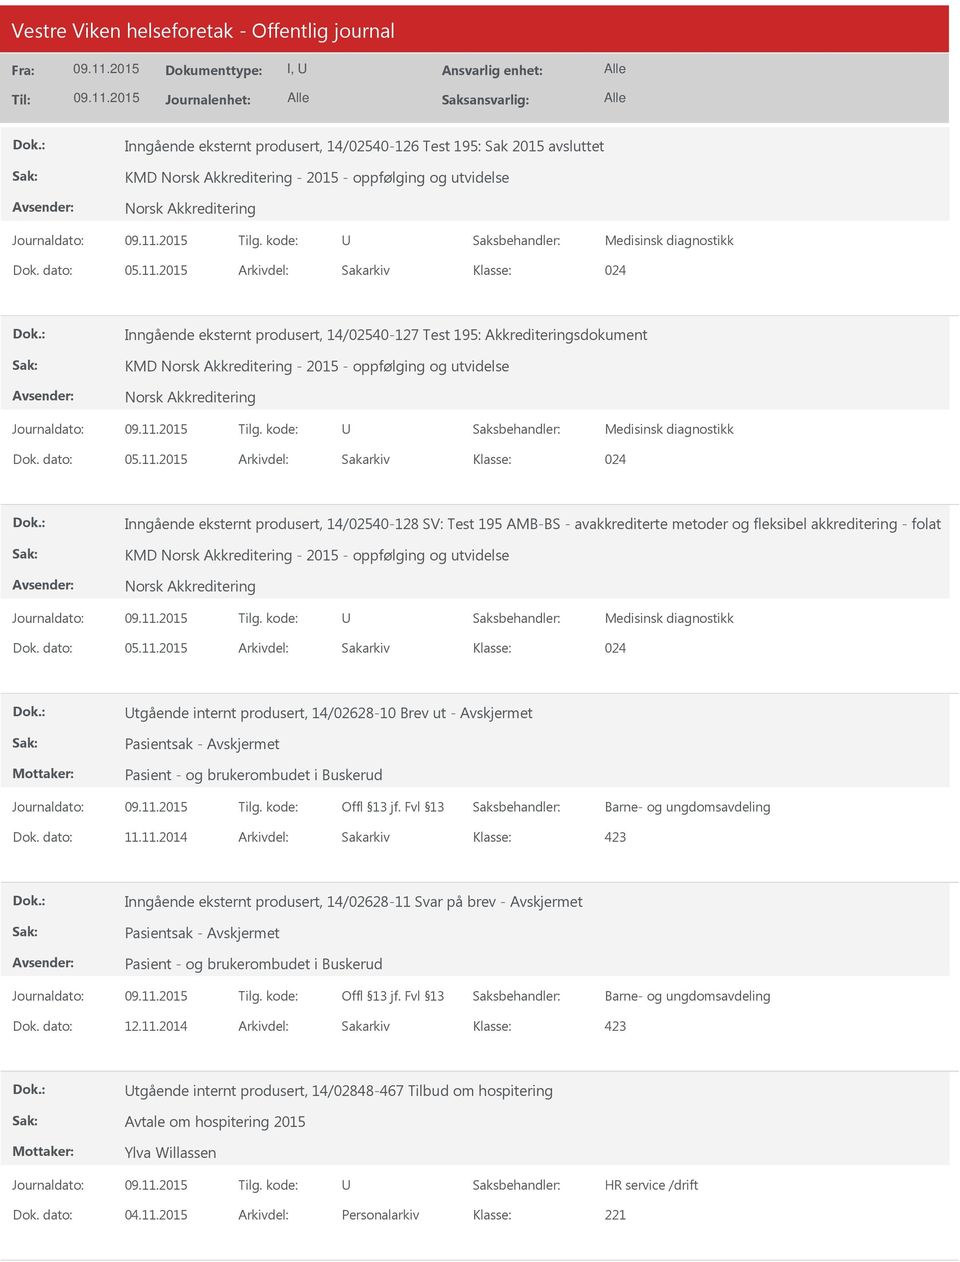 14/02540-128 SV: Test 195 AMB-BS - avakkrediterte metoder og fleksibel akkreditering - folat KMD Norsk Akkreditering - 2015 - oppfølging og utvidelse Norsk Akkreditering Medisinsk diagnostikk 024